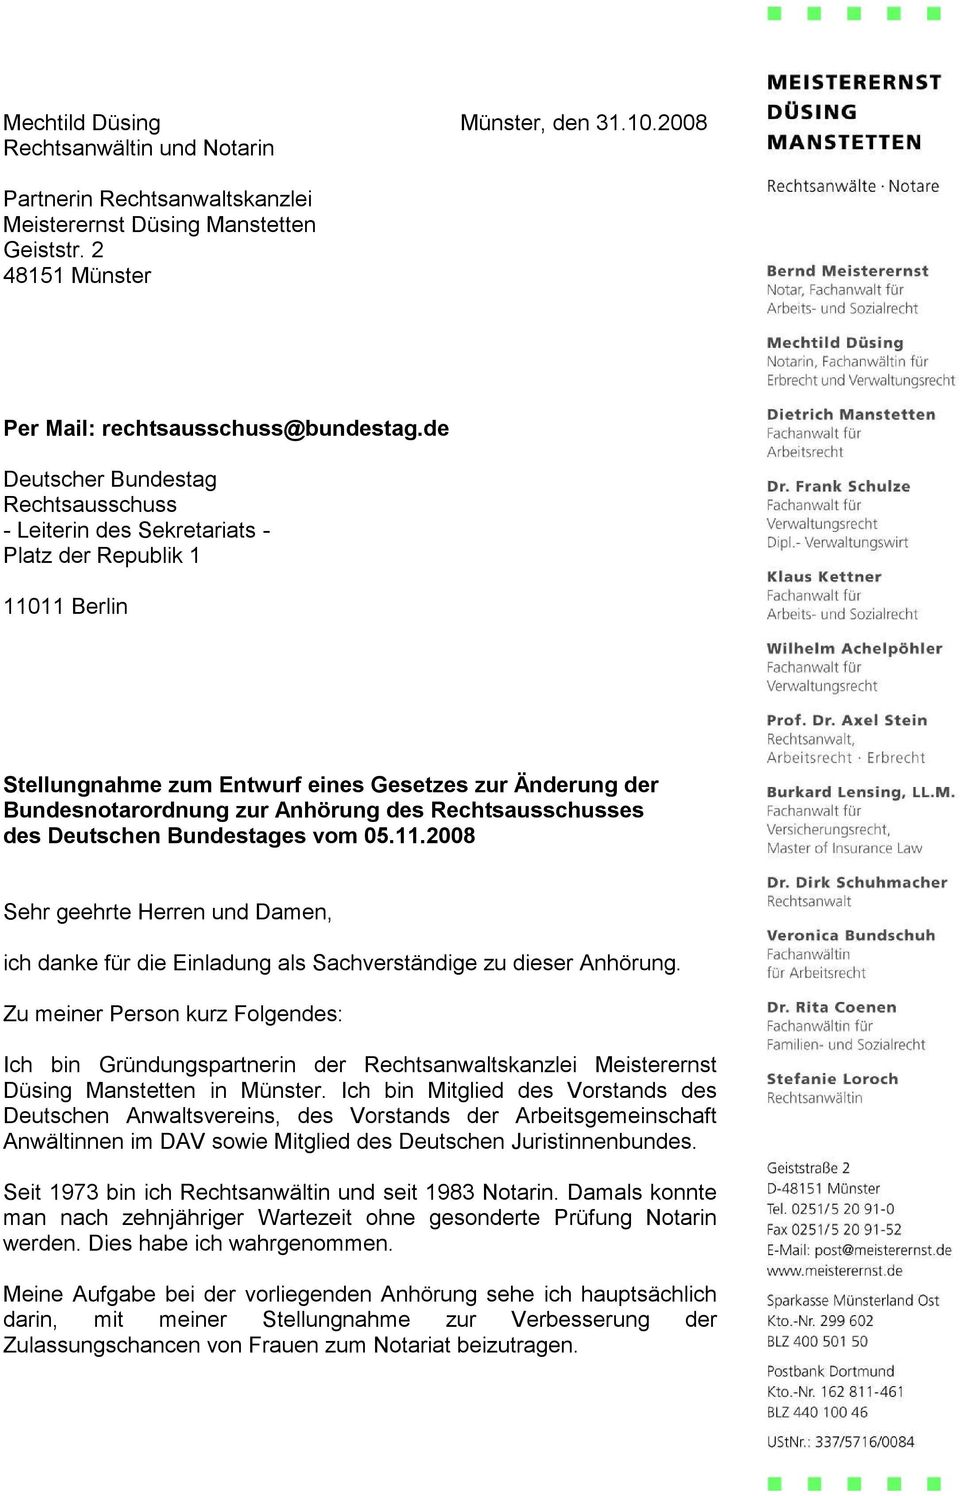 Rechtsausschusses des Deutschen Bundestages vom 05.11.2008 Sehr geehrte Herren und Damen, ich danke für die Einladung als Sachverständige zu dieser Anhörung.